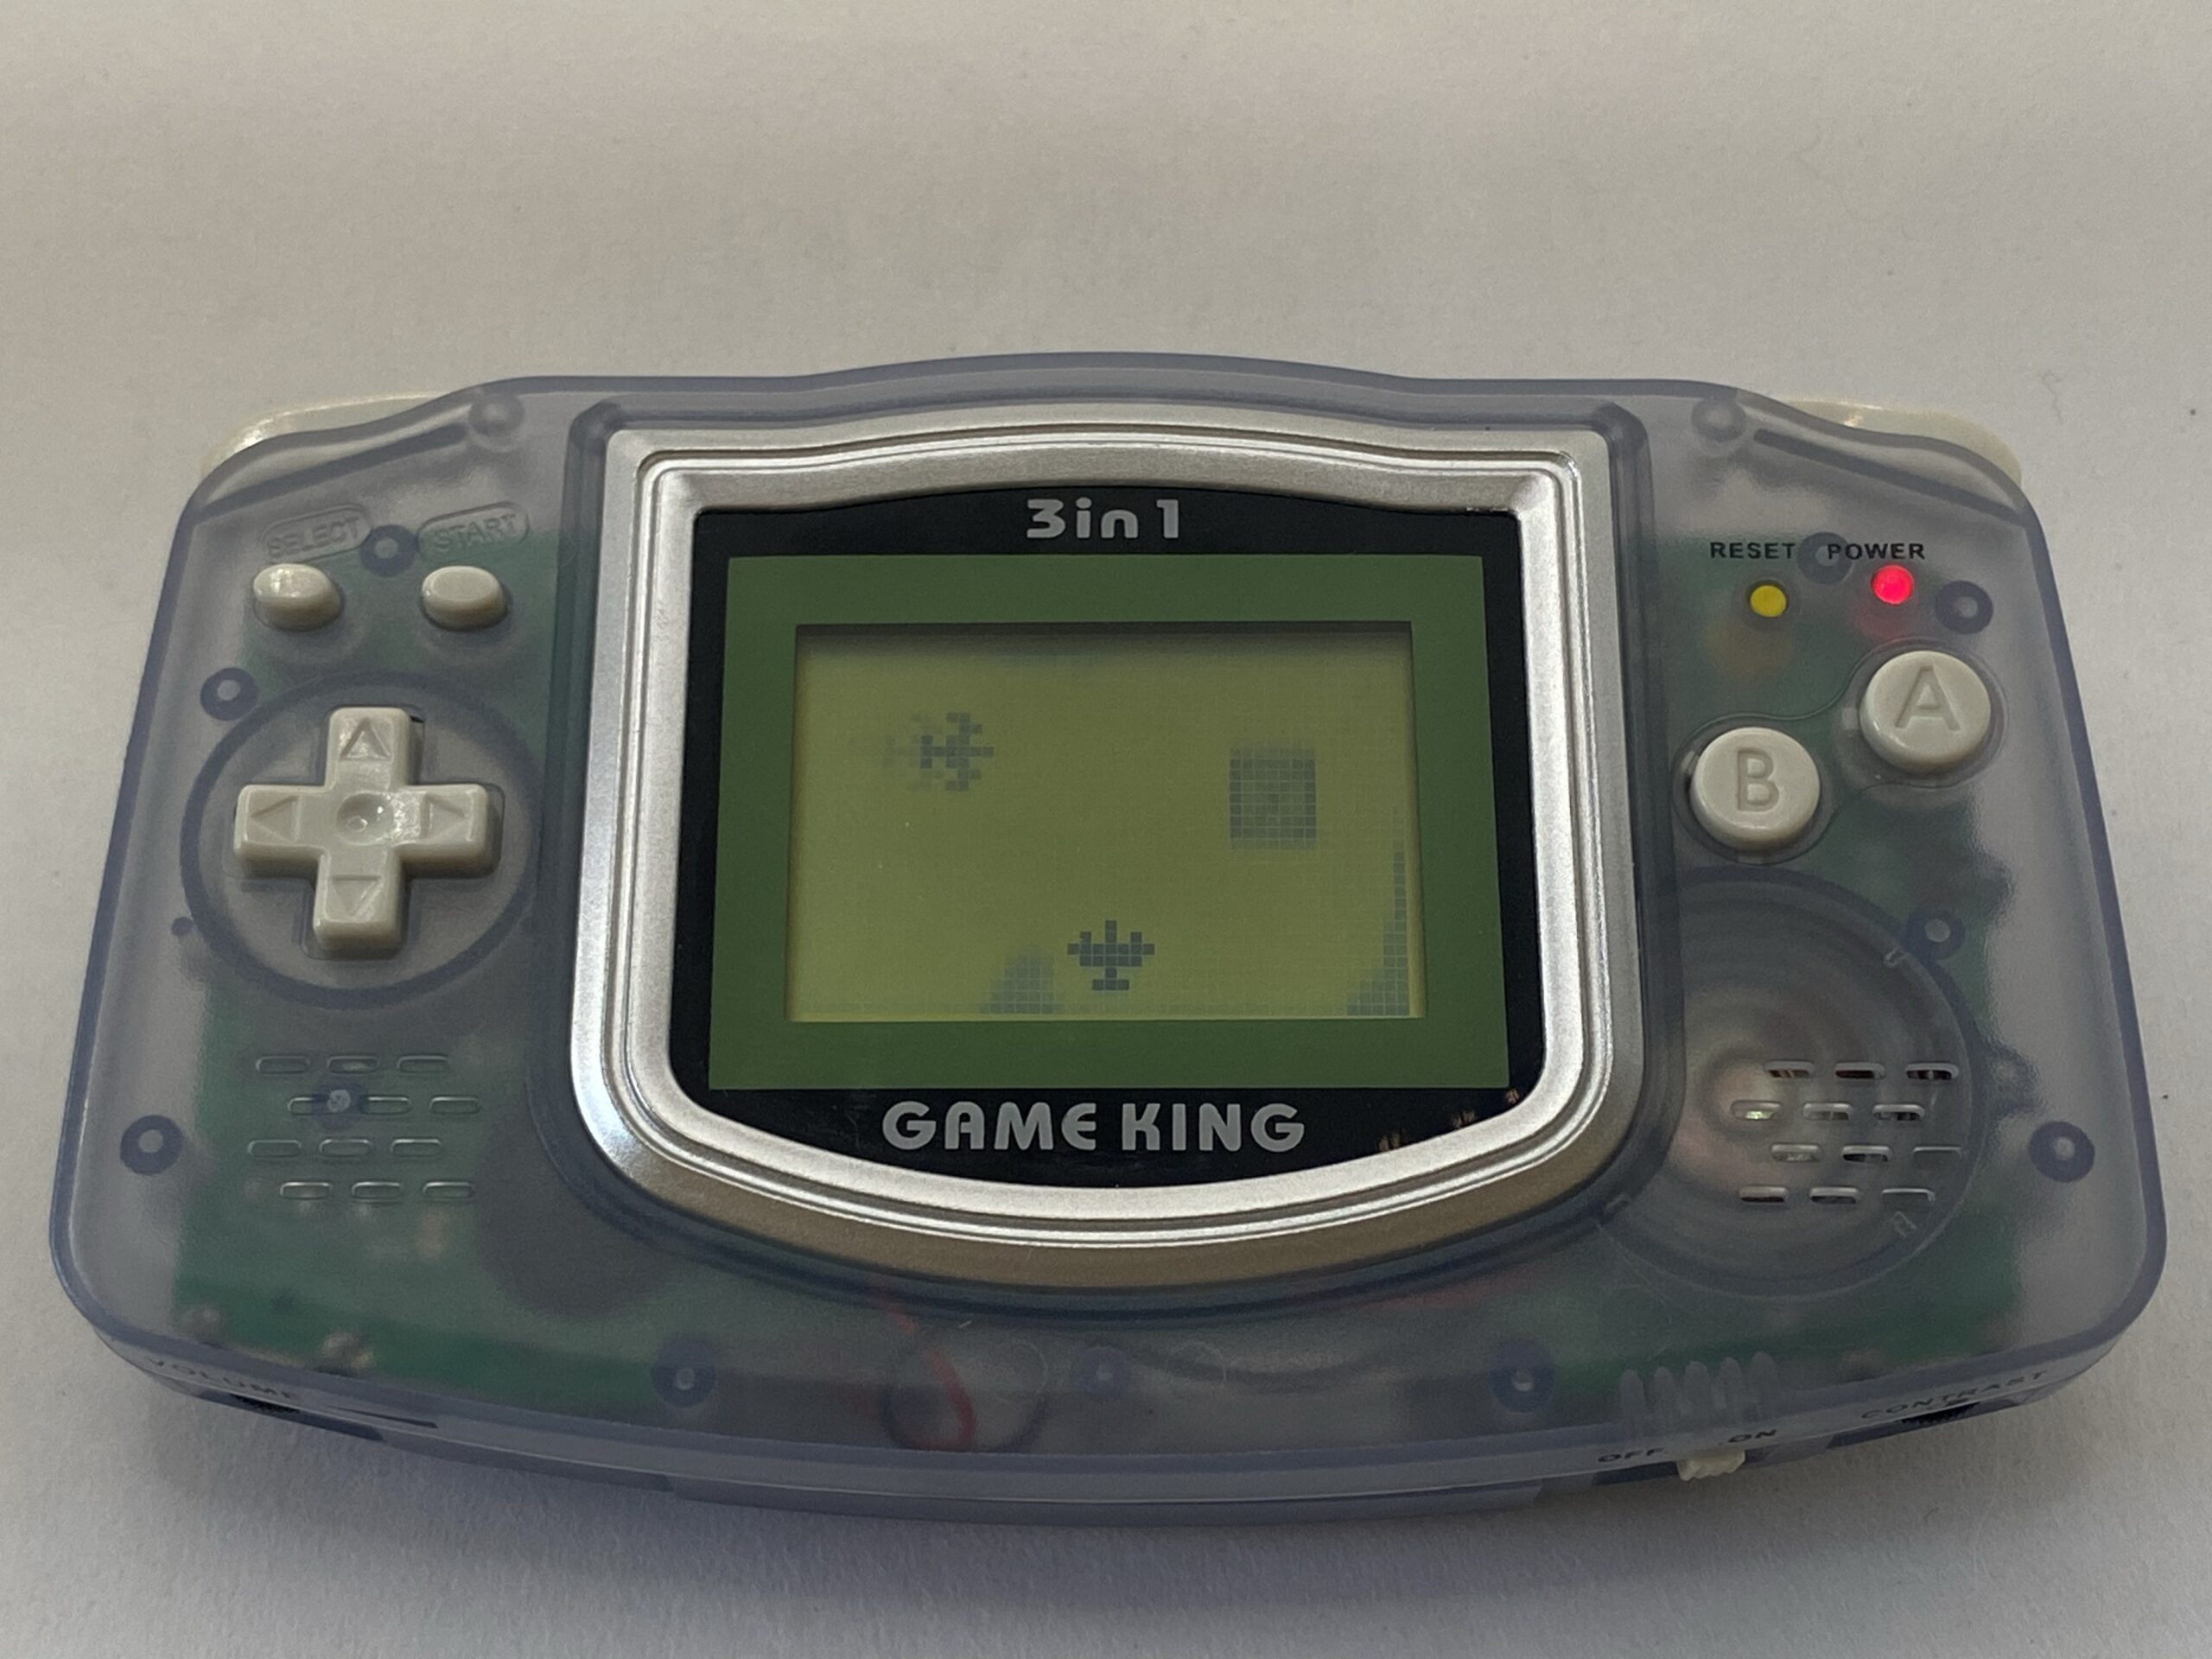 Examining Hong Kong's 2003 GameKing – Pad and Pixel